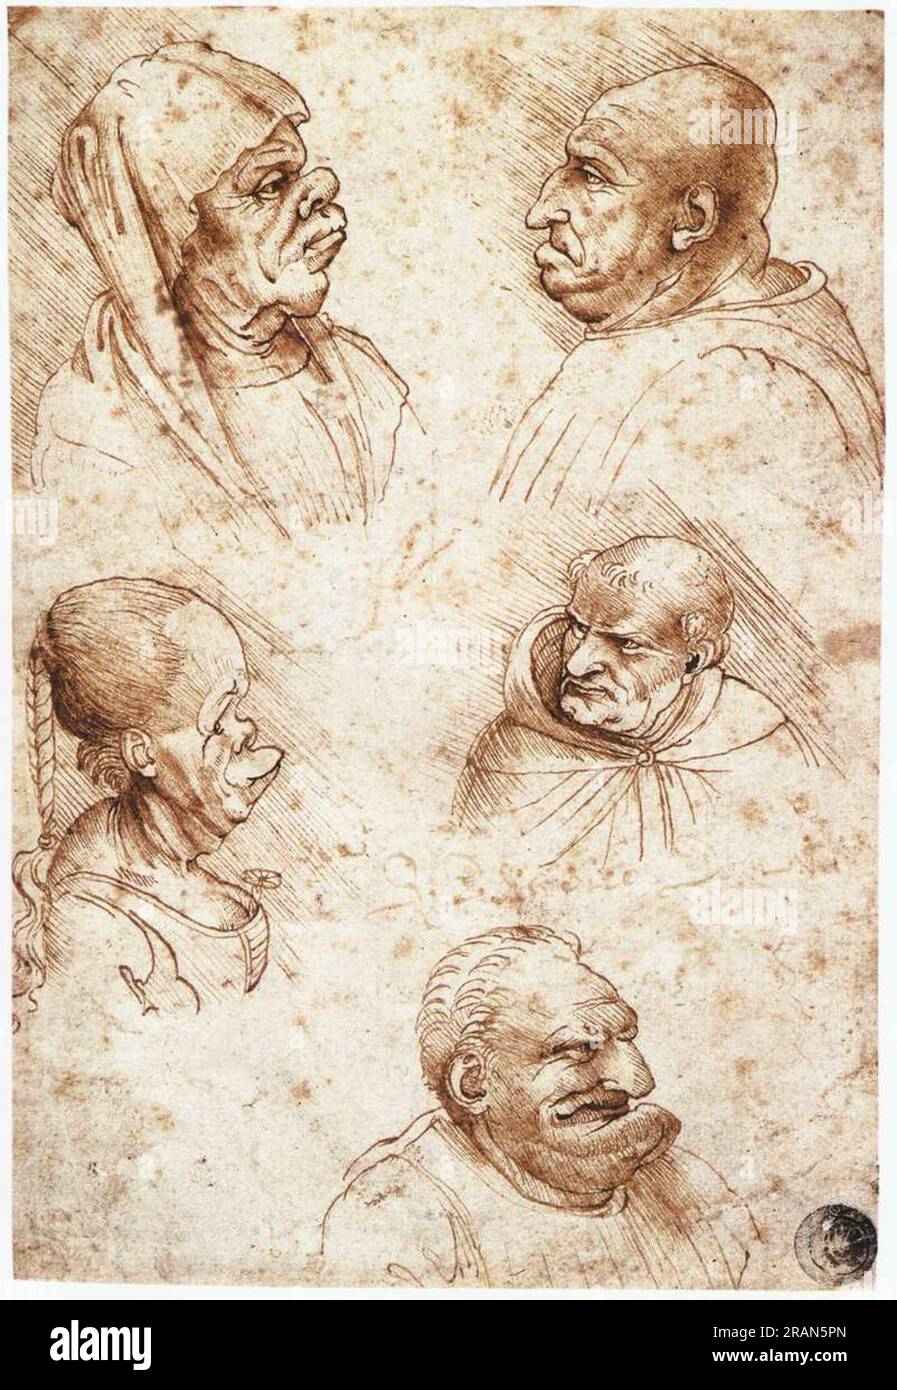 Cinq têtes de caricature vers 1490 ; Italie de Léonard de Vinci Banque D'Images